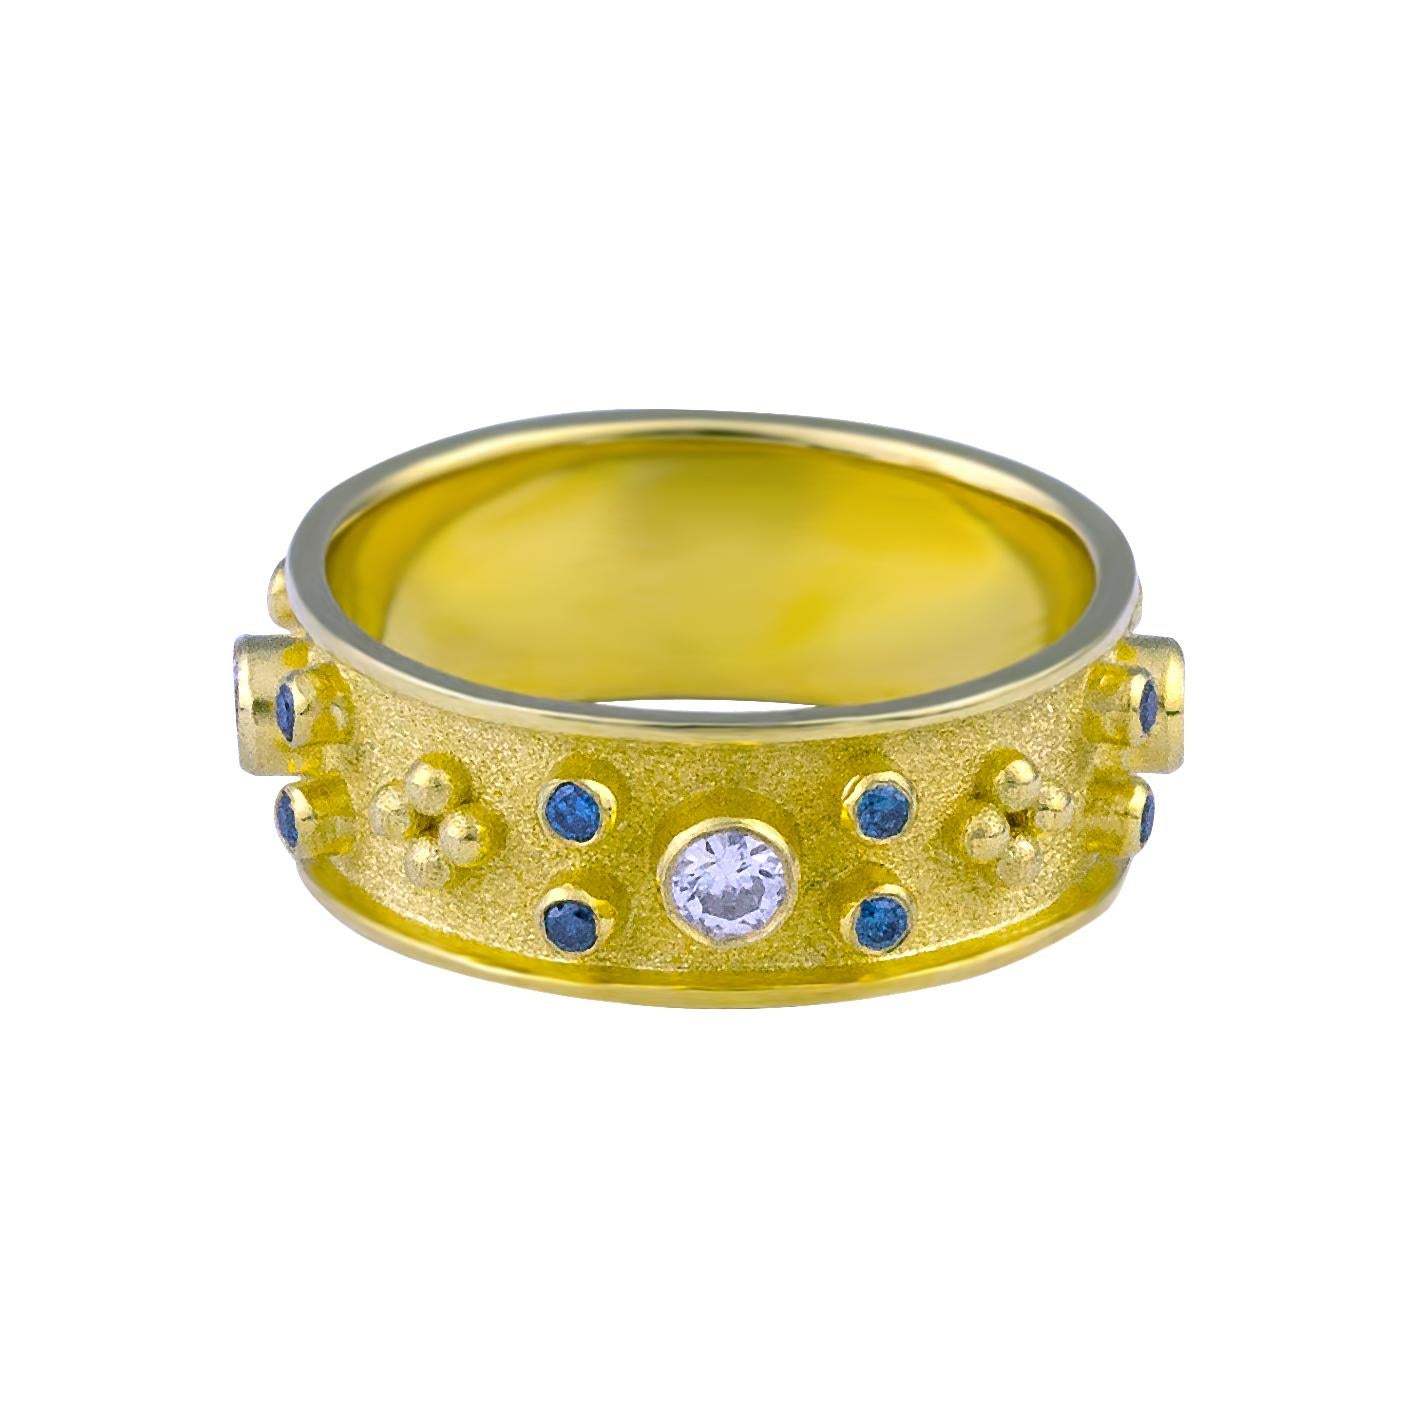 S.Georgios Designer 18 Karat massivem Gelbgold Band Ring alle handgefertigt mit byzantinischen Granulation Verarbeitung und eine einzigartige Samt Hintergrund. Der atemberaubende Ring hat 4 weiße Diamanten im Brillantschliff mit einem Gesamtgewicht